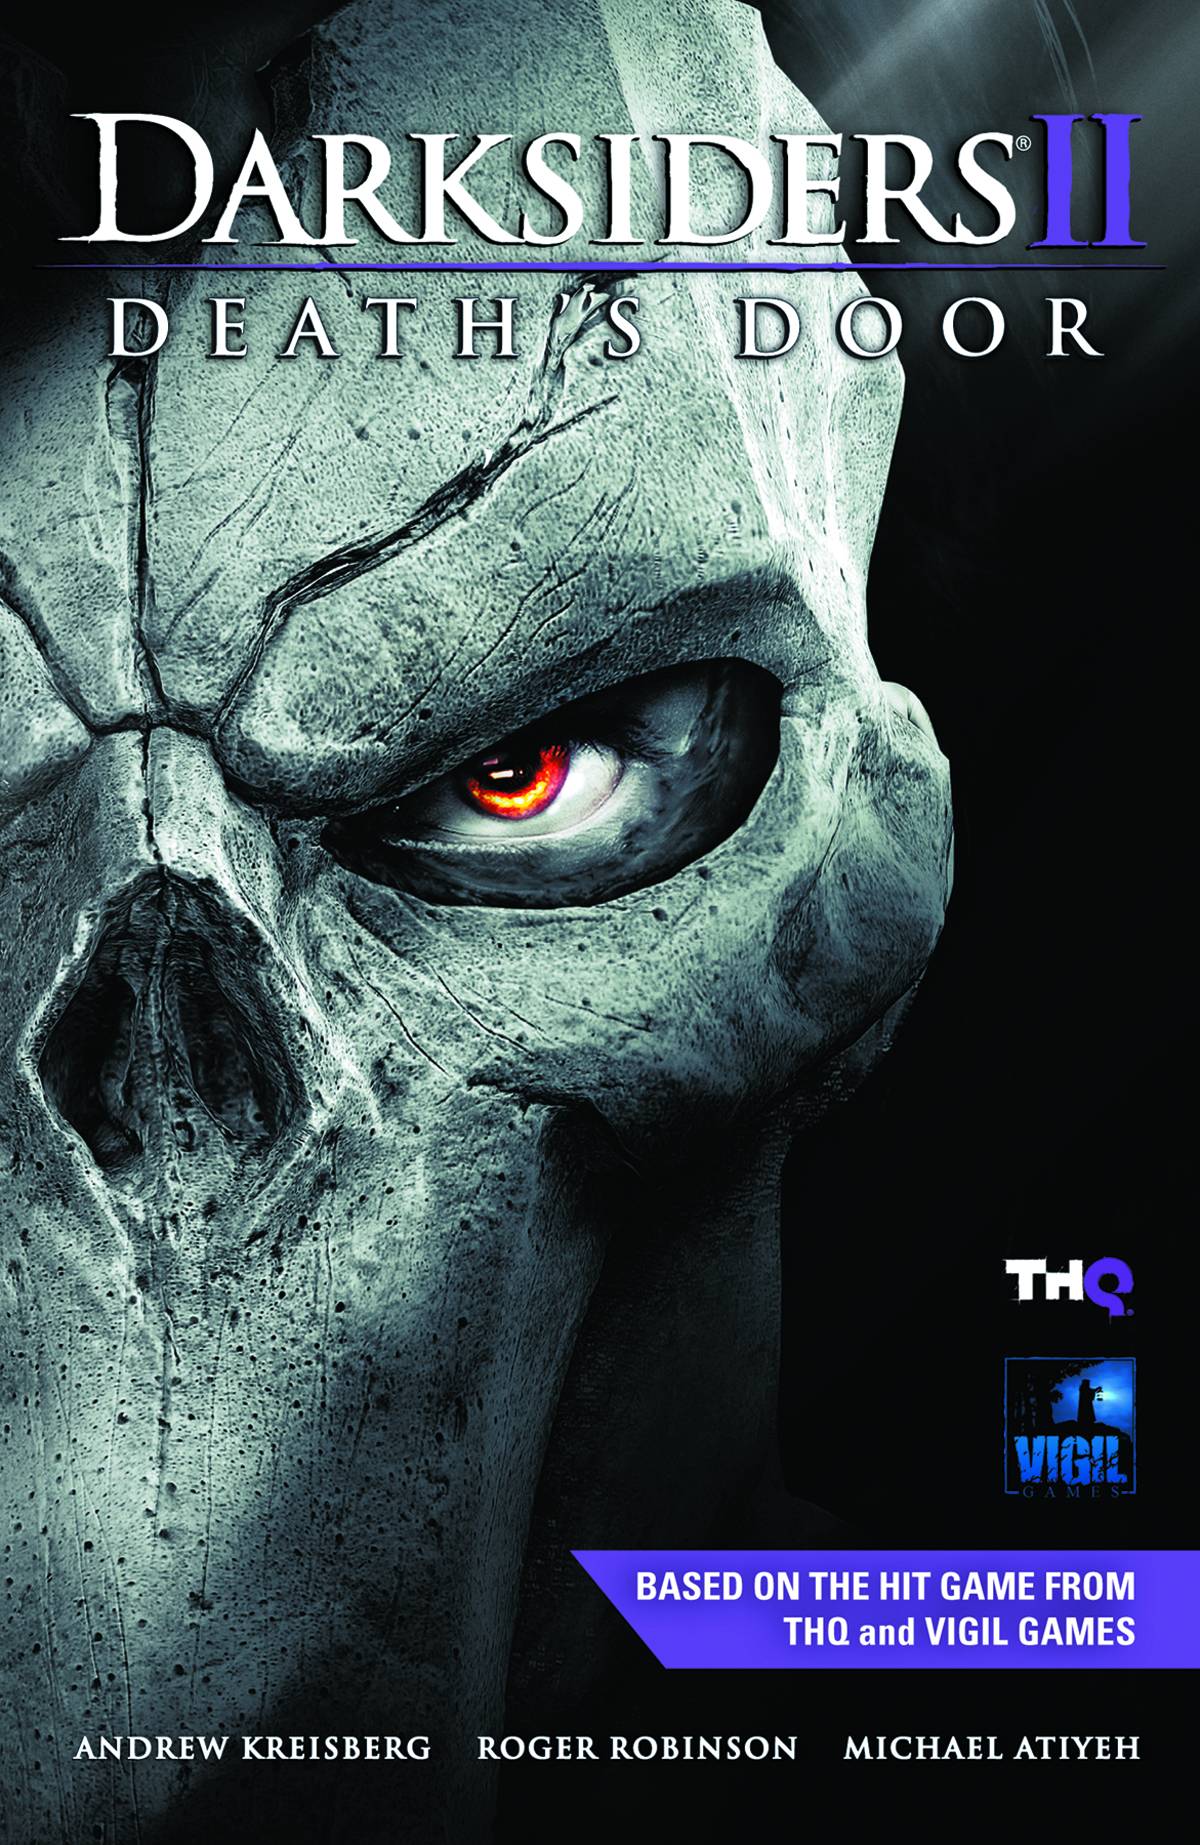 Darksiders II Deaths Door Hardcover Volume 1